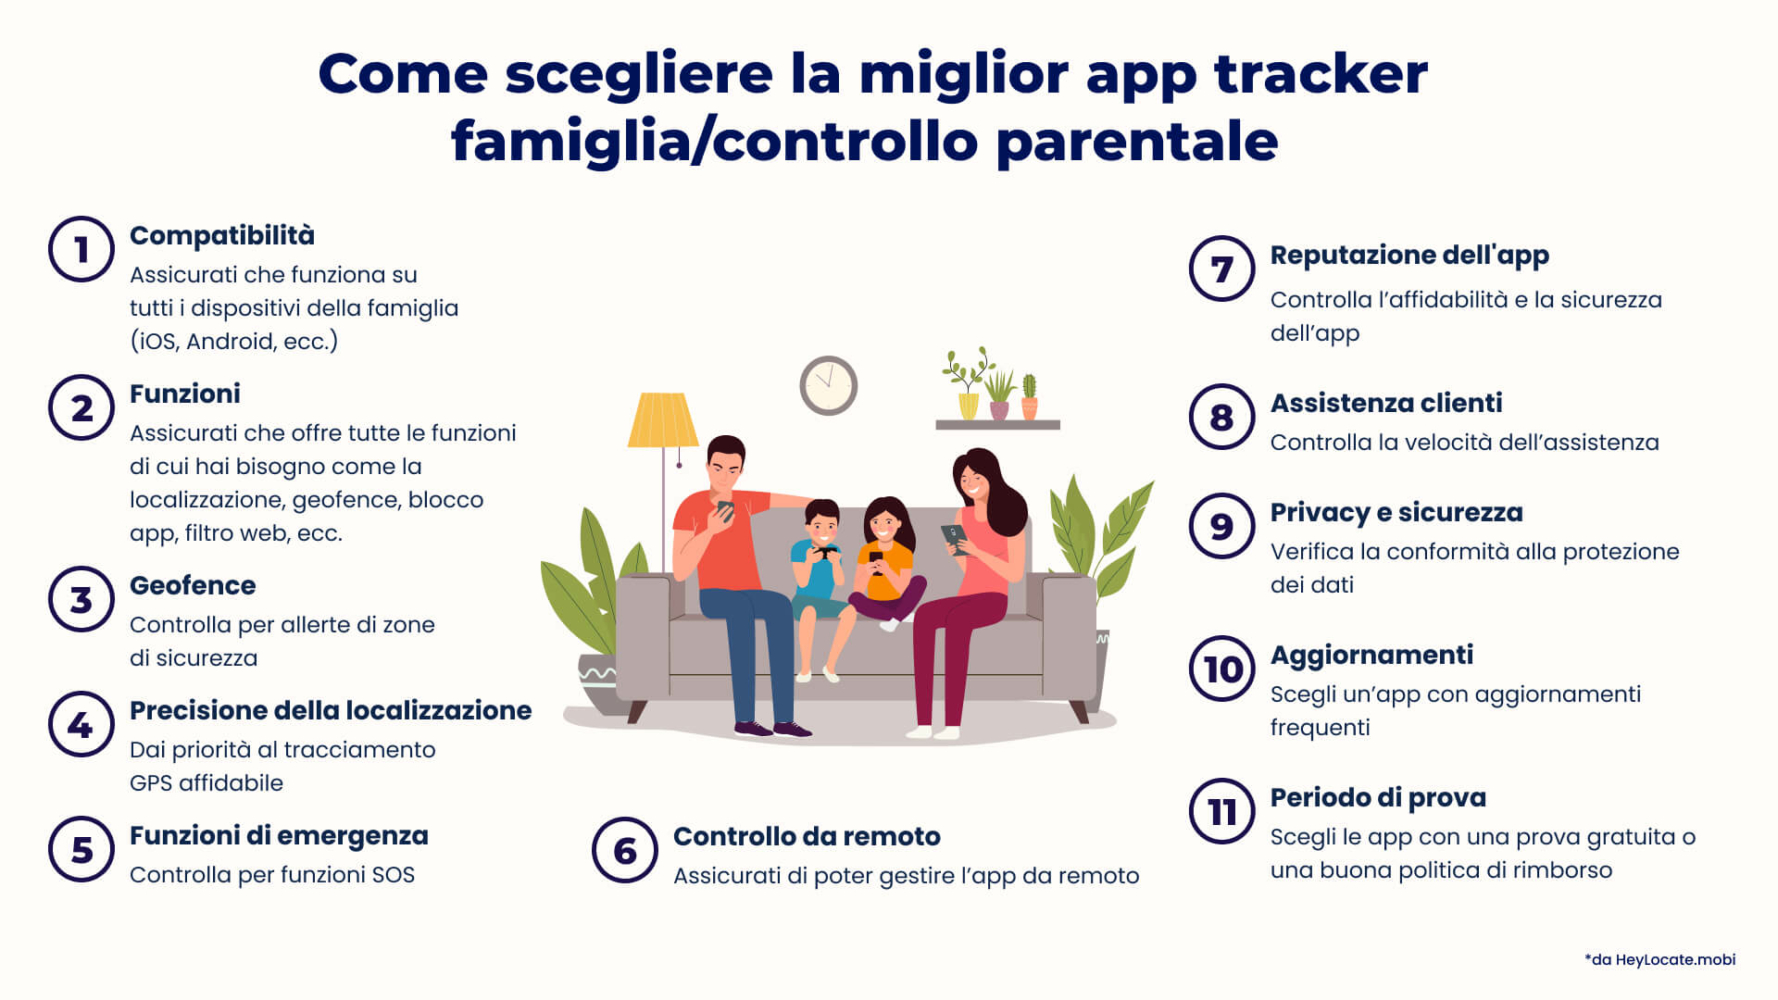 Un elenco di cose da tenere a mente quando si sceglie la migliore app per il monitoraggio della famiglia e il controllo parentale 
